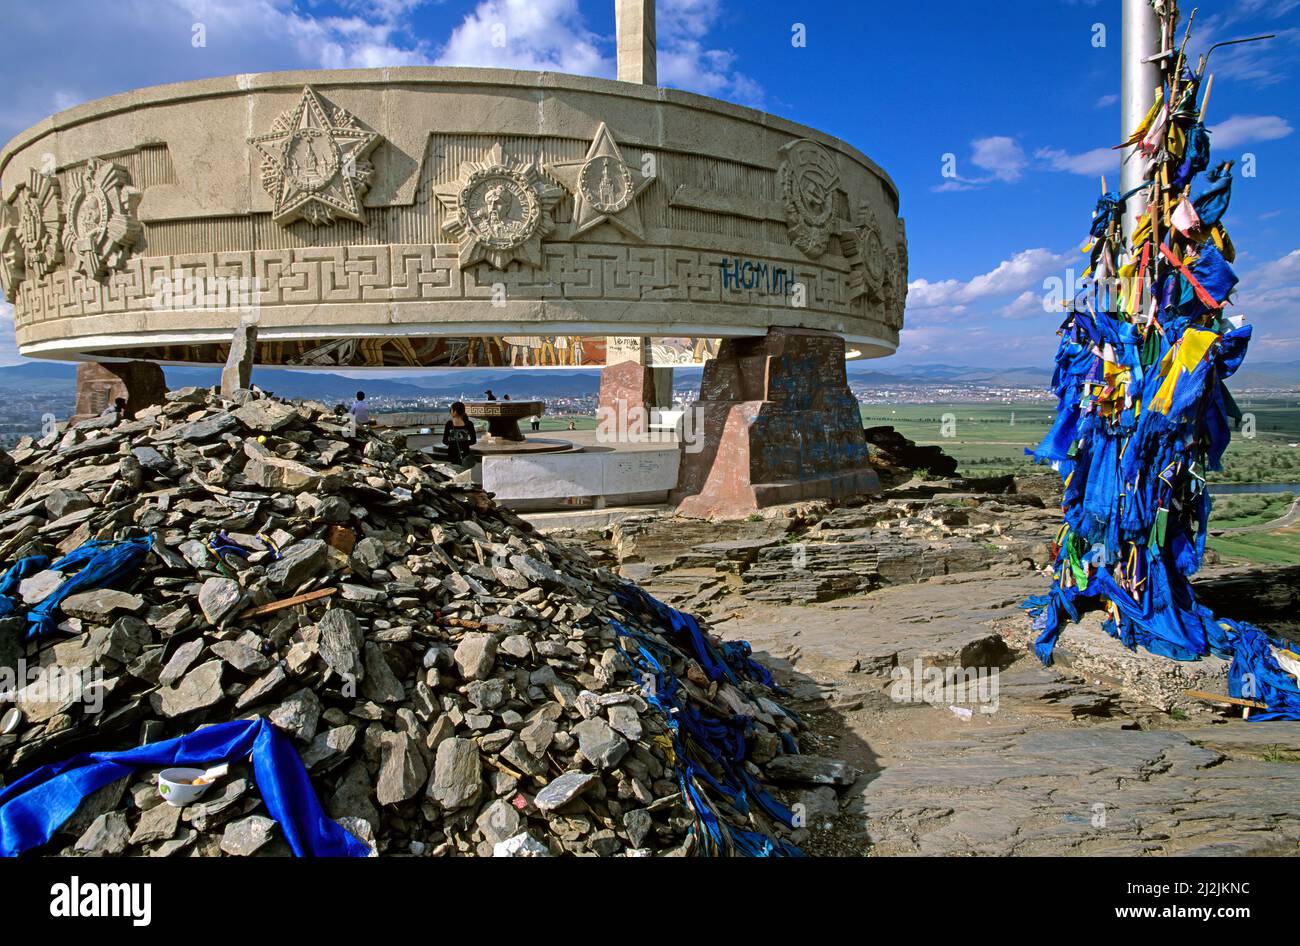 Mongolie. Oulan-Bator. Le Mémorial de Zaisan est un mémorial au sud de la capitale mongole d'Oulan-Bator qui honore les soldats soviétiques tués pendant la guerre mondiale Banque D'Images